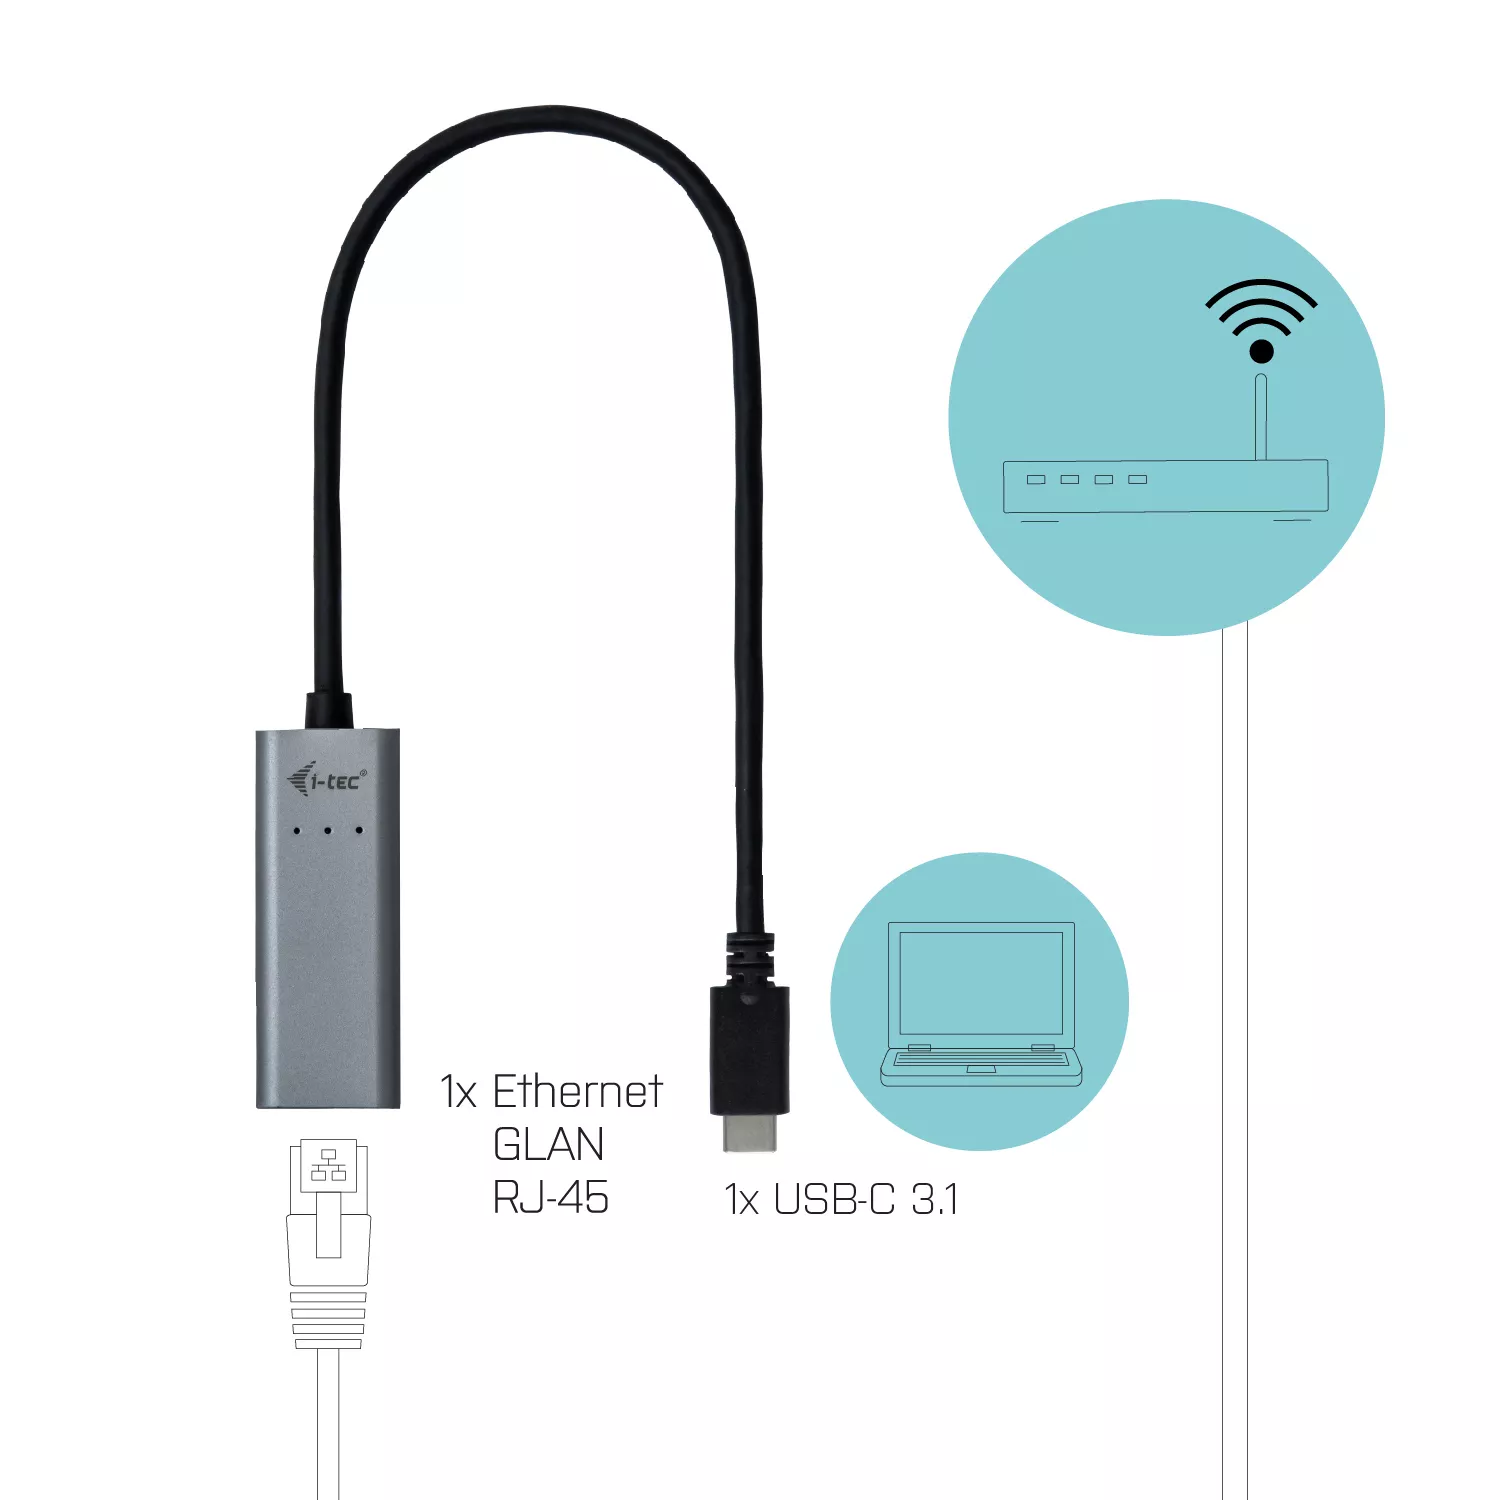 Vente I-TEC USB-C Metal Gigabit Ethernet Adapter 1xUSB-C to i-tec au meilleur prix - visuel 6